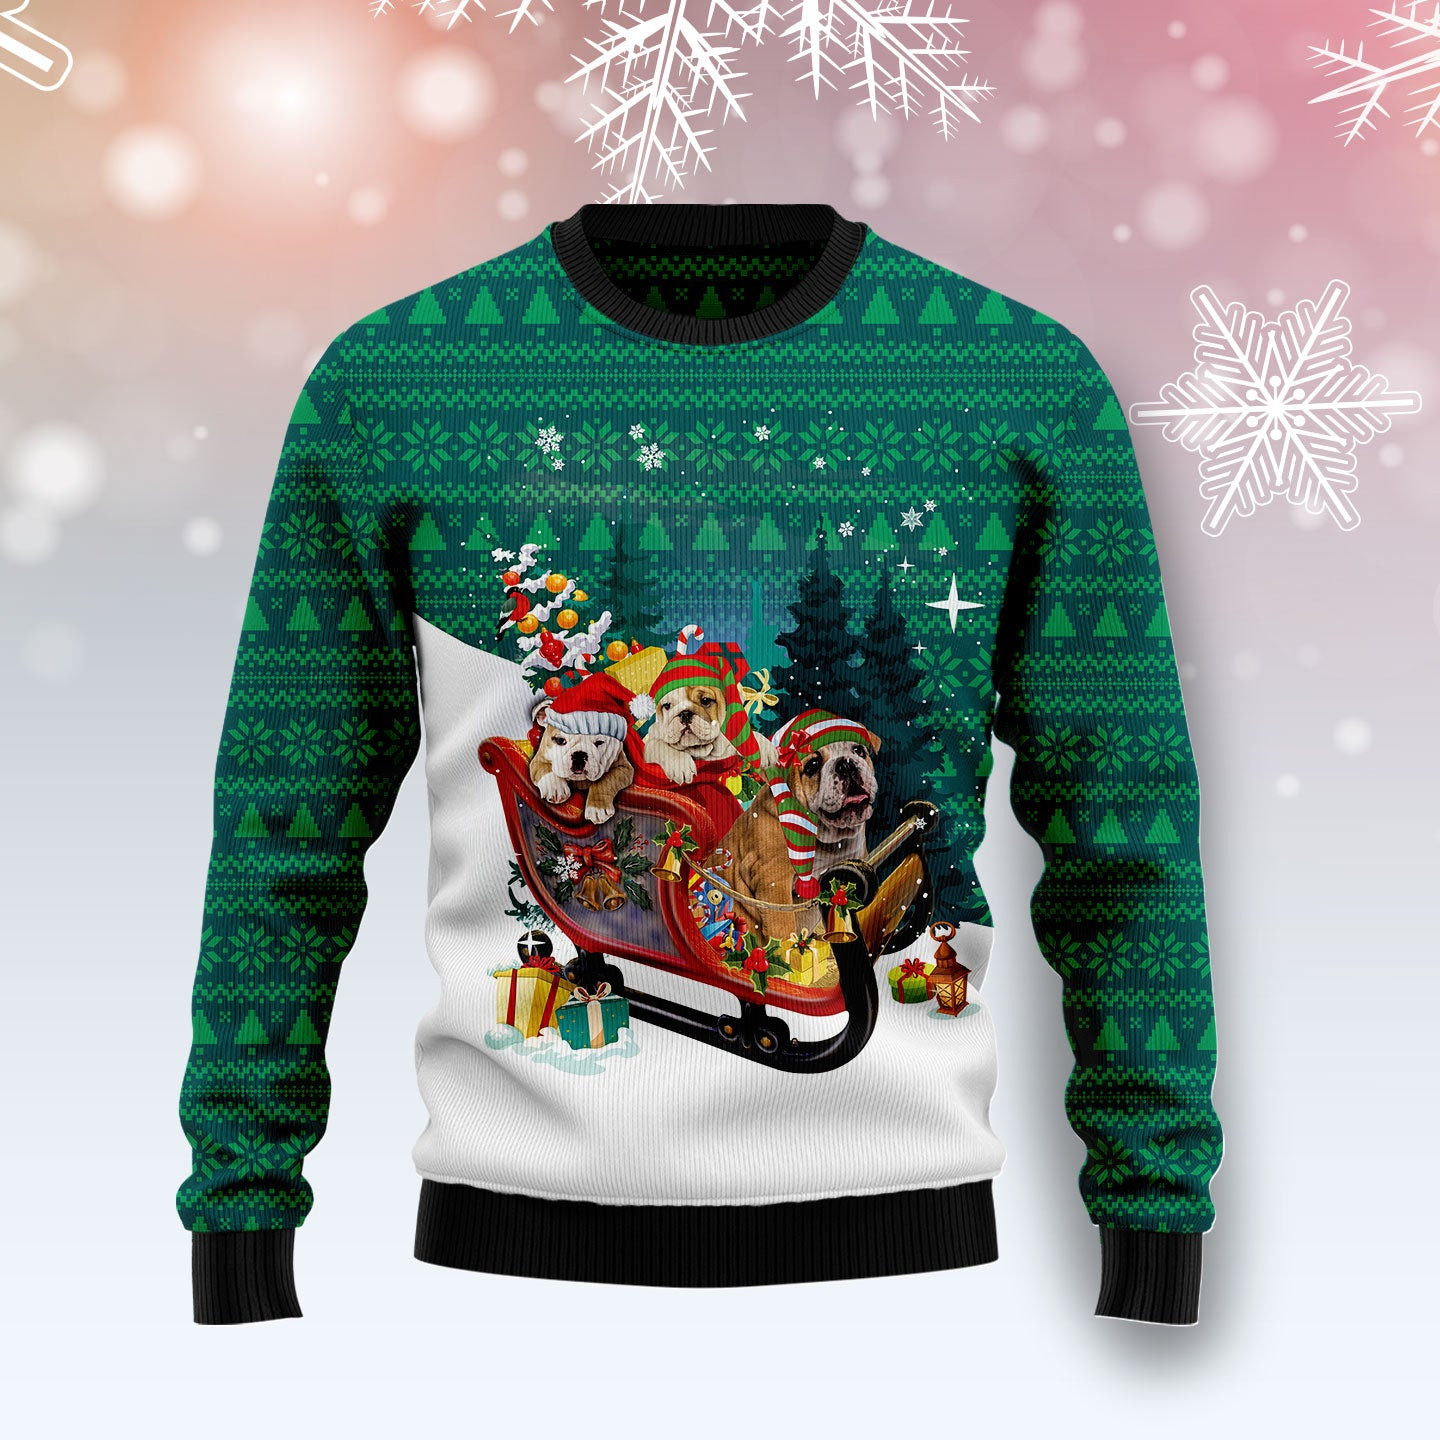 Bulldog Sleigh T3010 Ugly Christmas Sweater